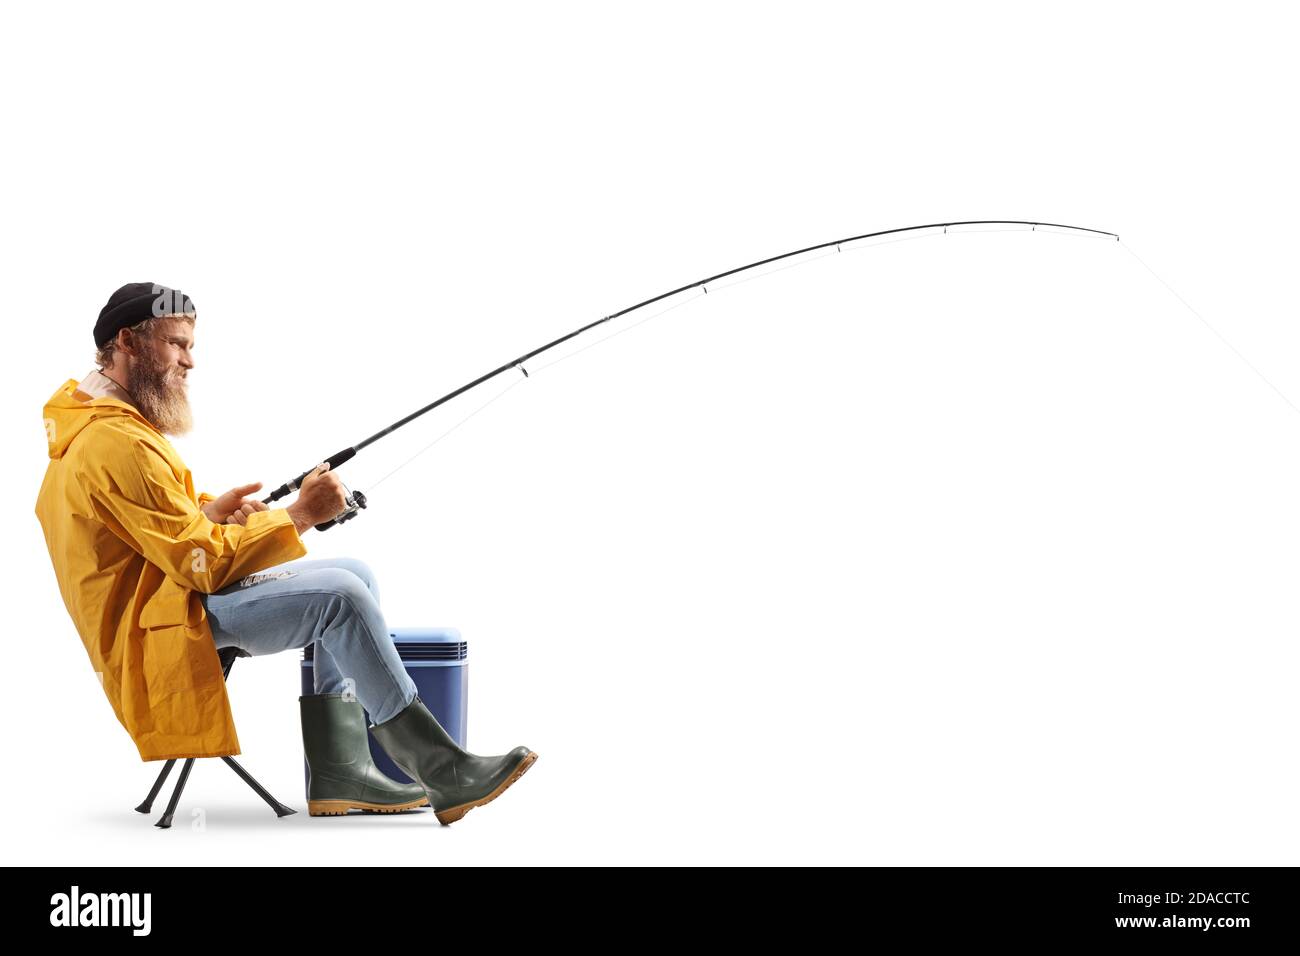 Foto di un pescatore su una sedia a lunghezza di profilo completo tirando una canna da pesca isolata su sfondo bianco Foto Stock